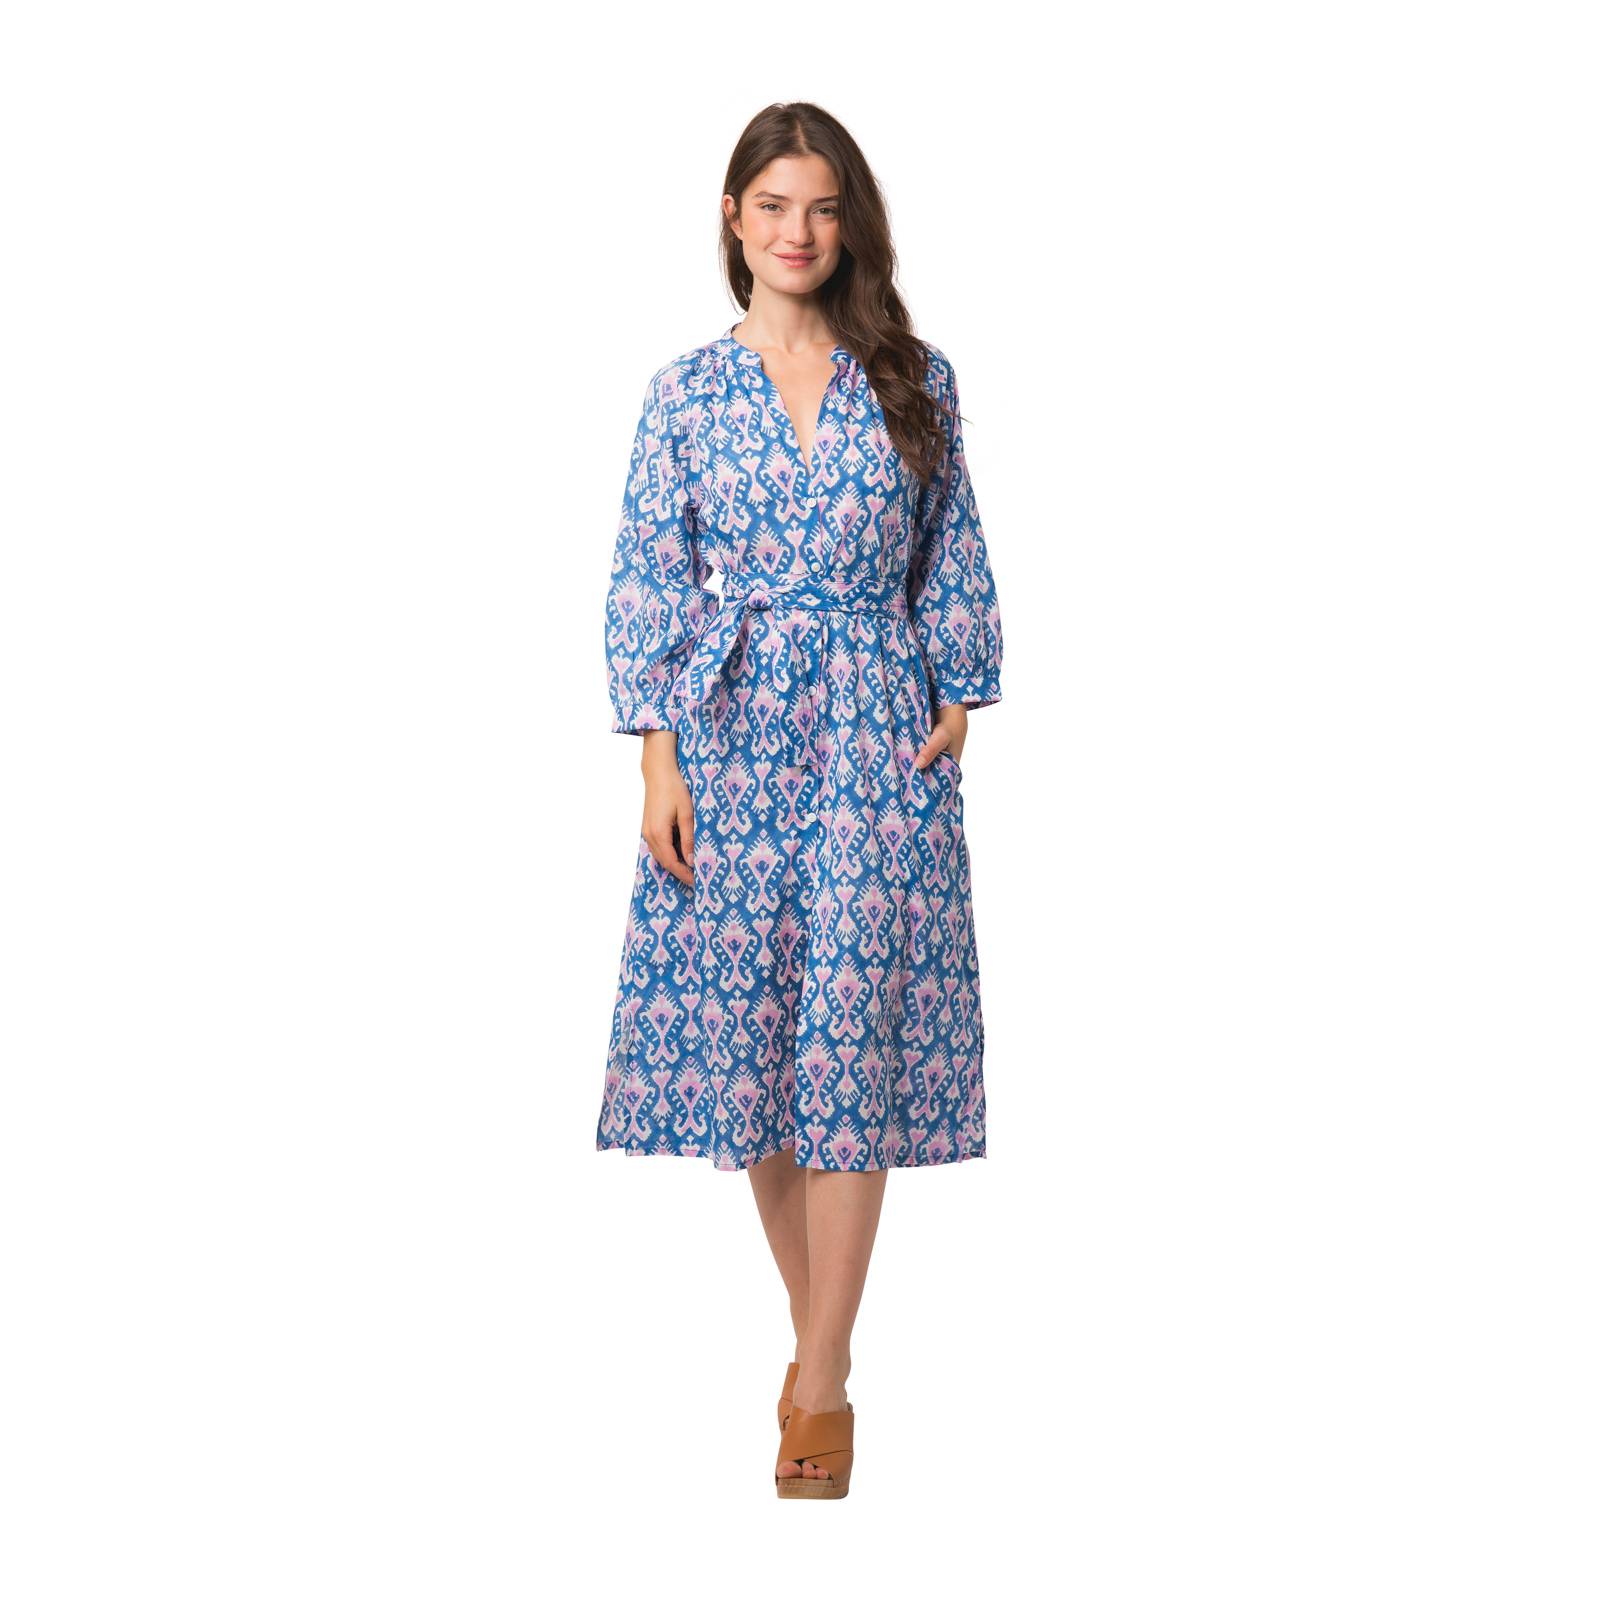 Robes Robe Marcelle Ikat 100% Coton bio Ethnique VR4104 BLUE